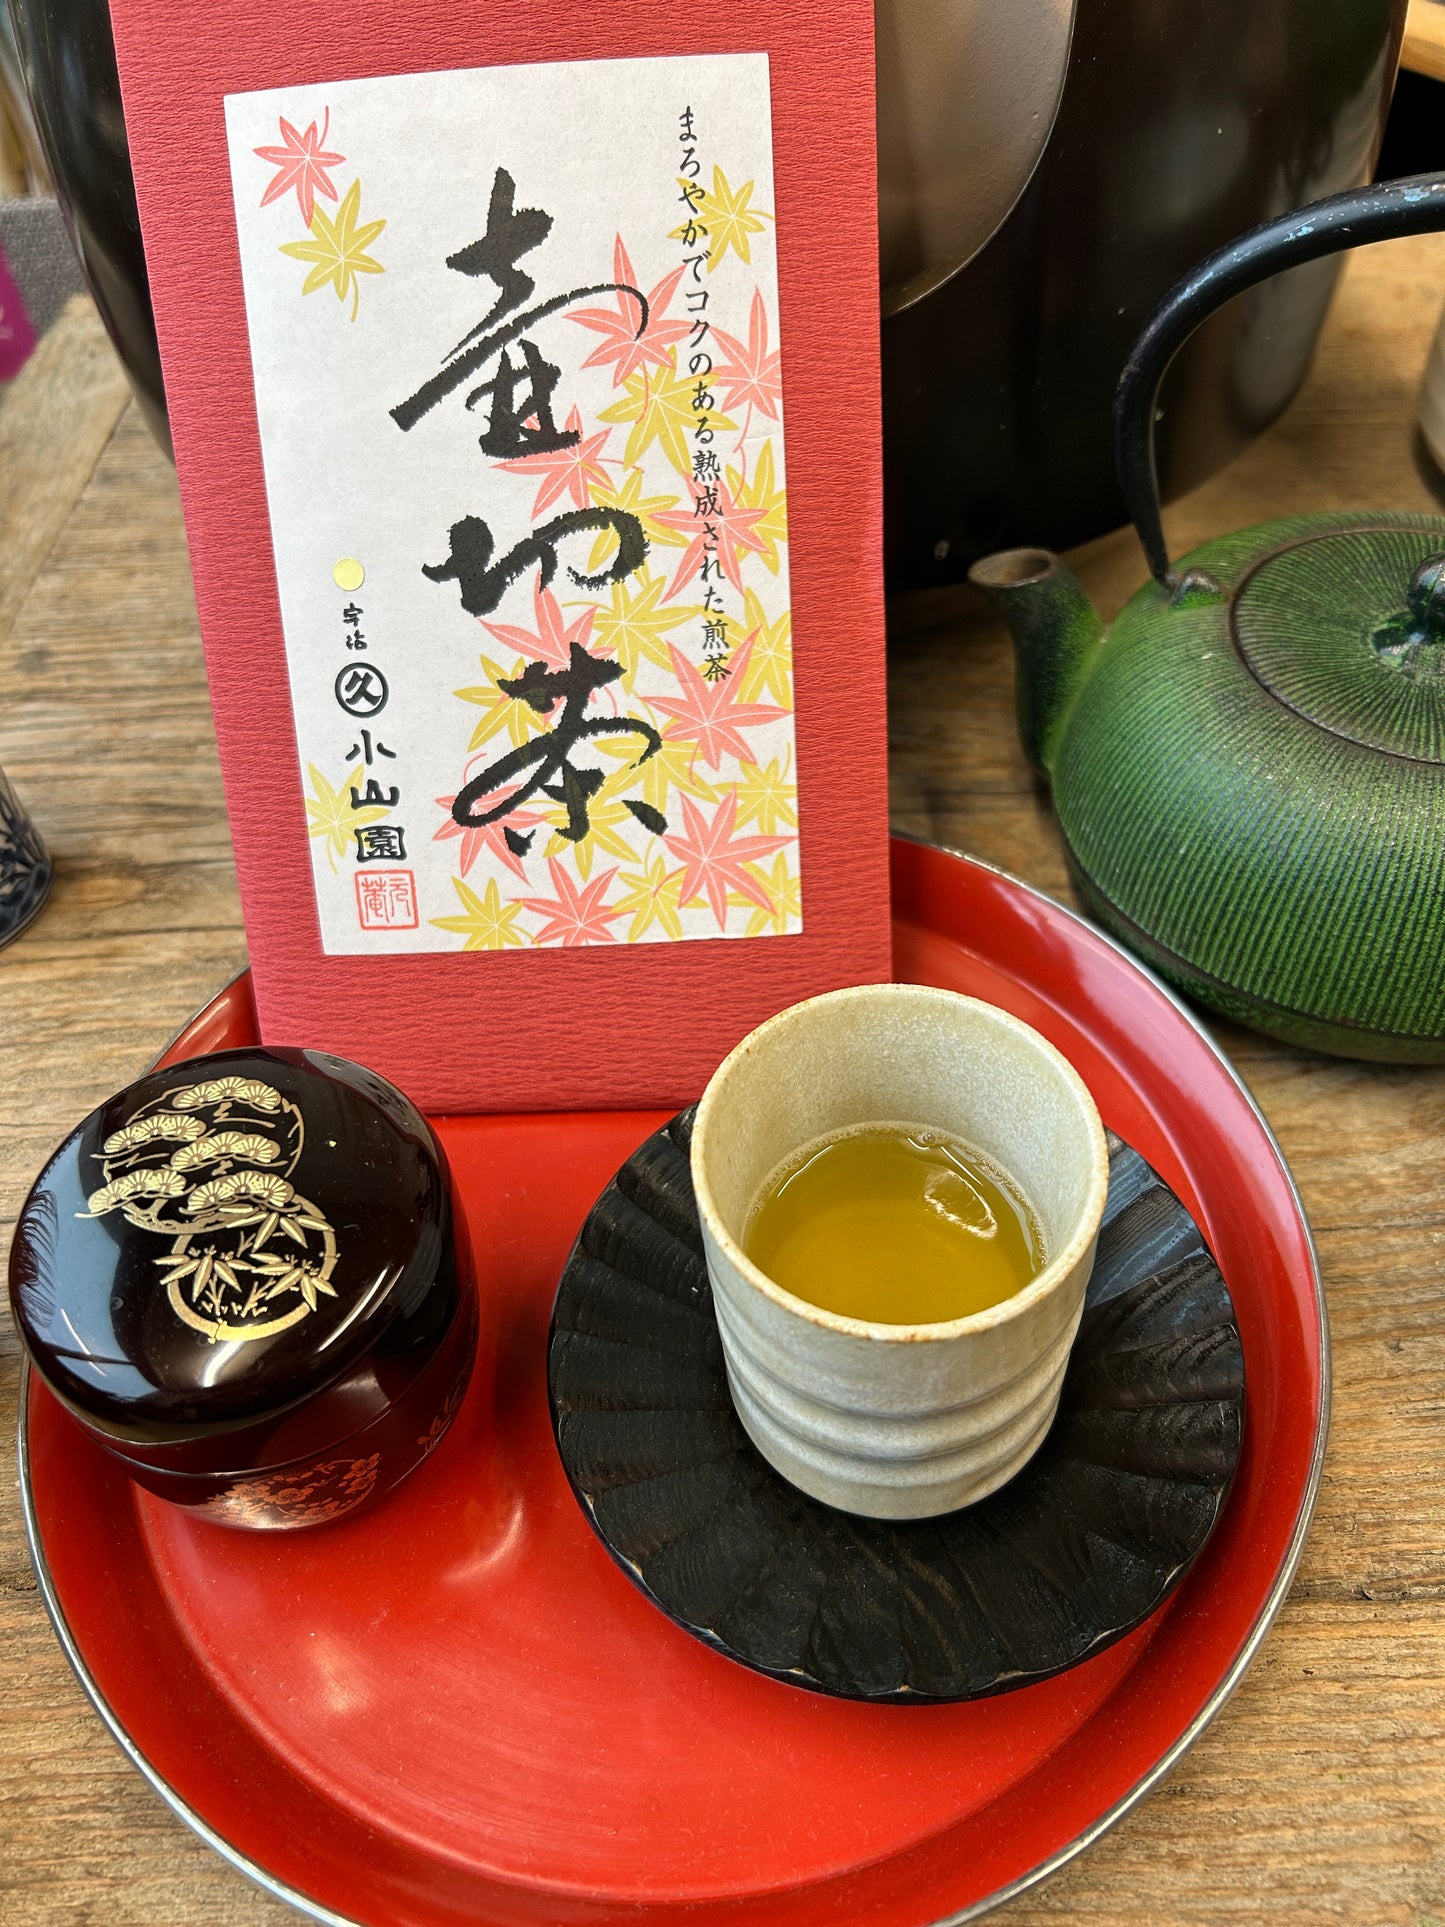 Tsubokiri Sencha - Gold (Autumn Green Tea)